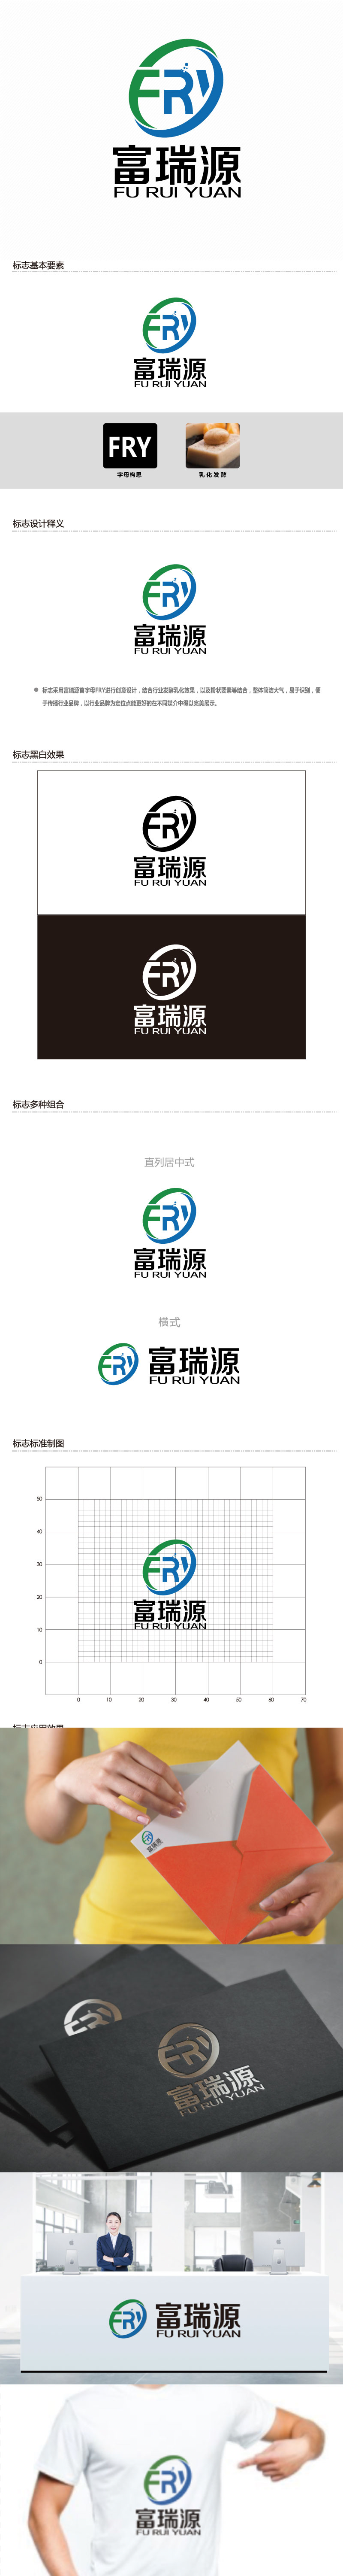 连杰的富瑞源logo设计